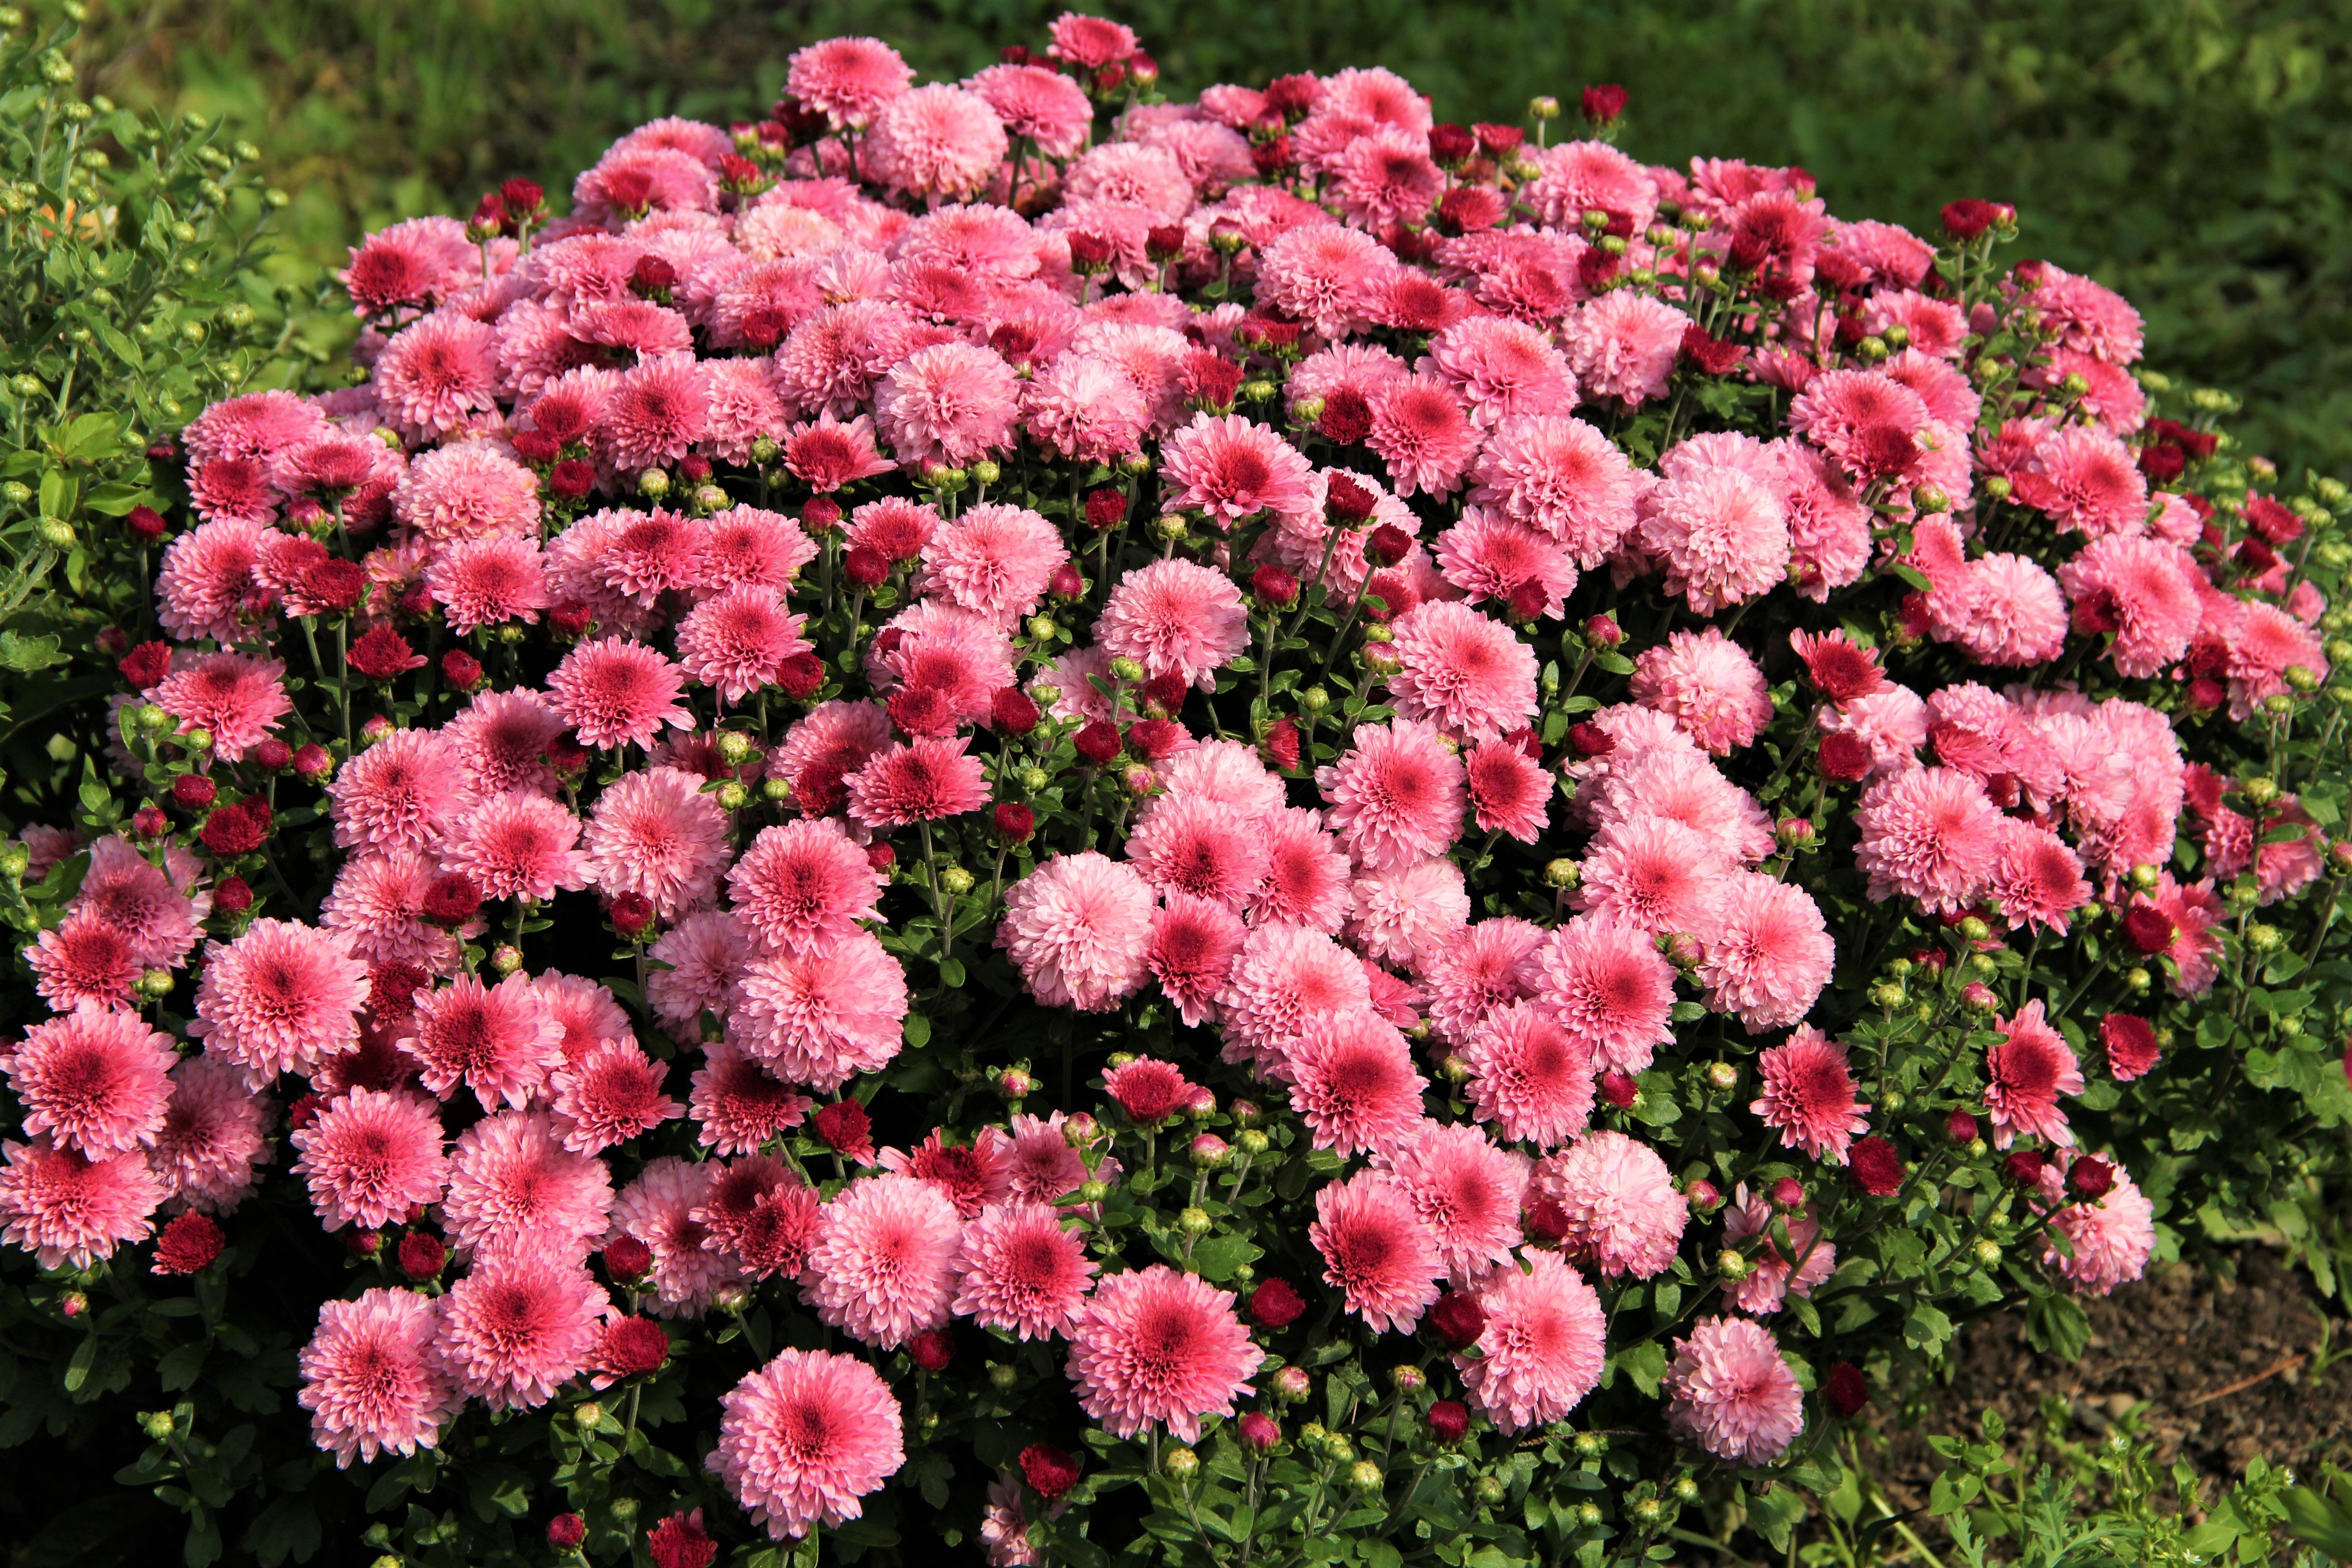 Chrysanthemum Earth Flower Pink Flower 4500x3000